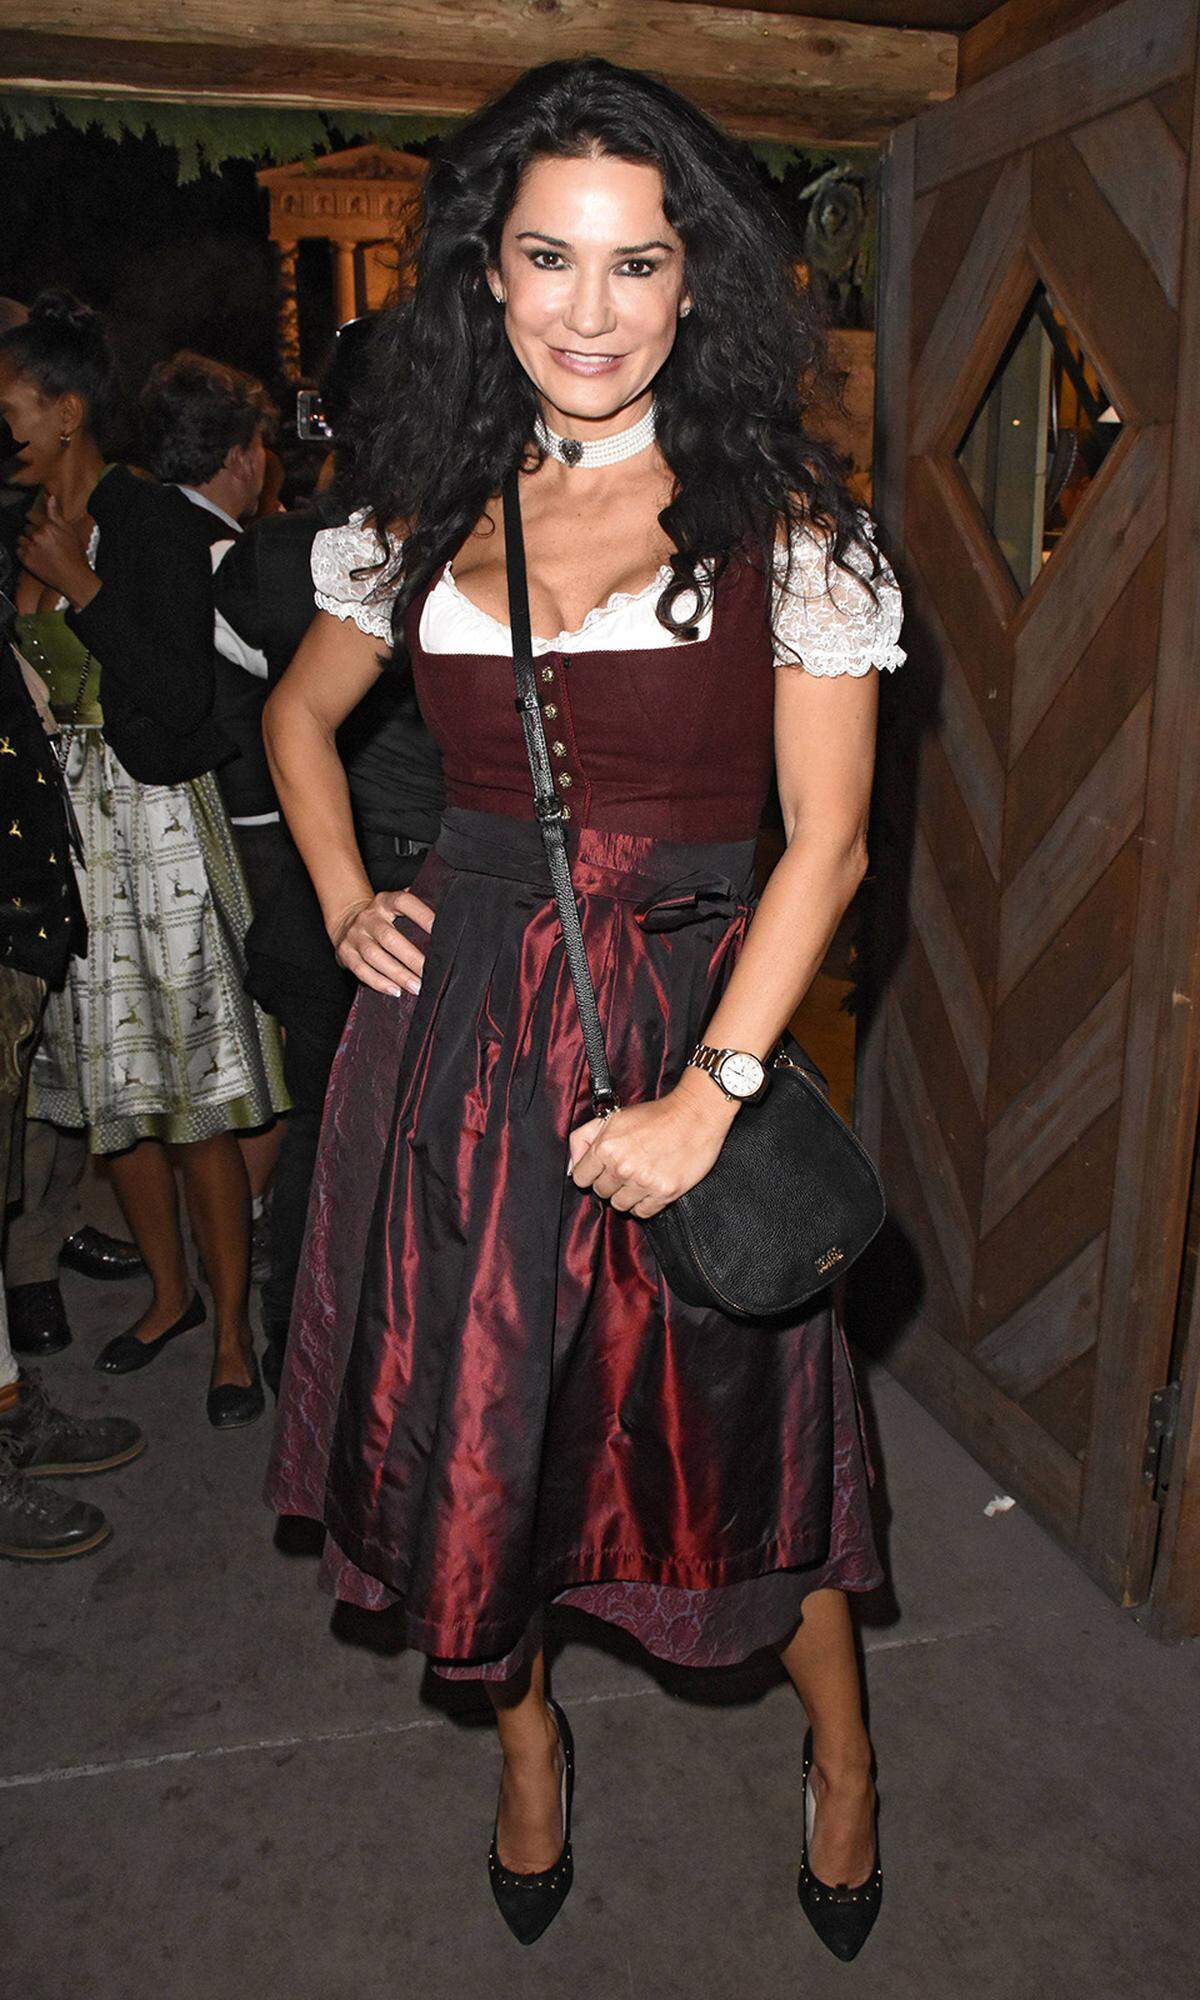 Schauspielerin Mariella Ahrens durfte im Festzelt "Zur Bratwurst" das Fass anstechen.